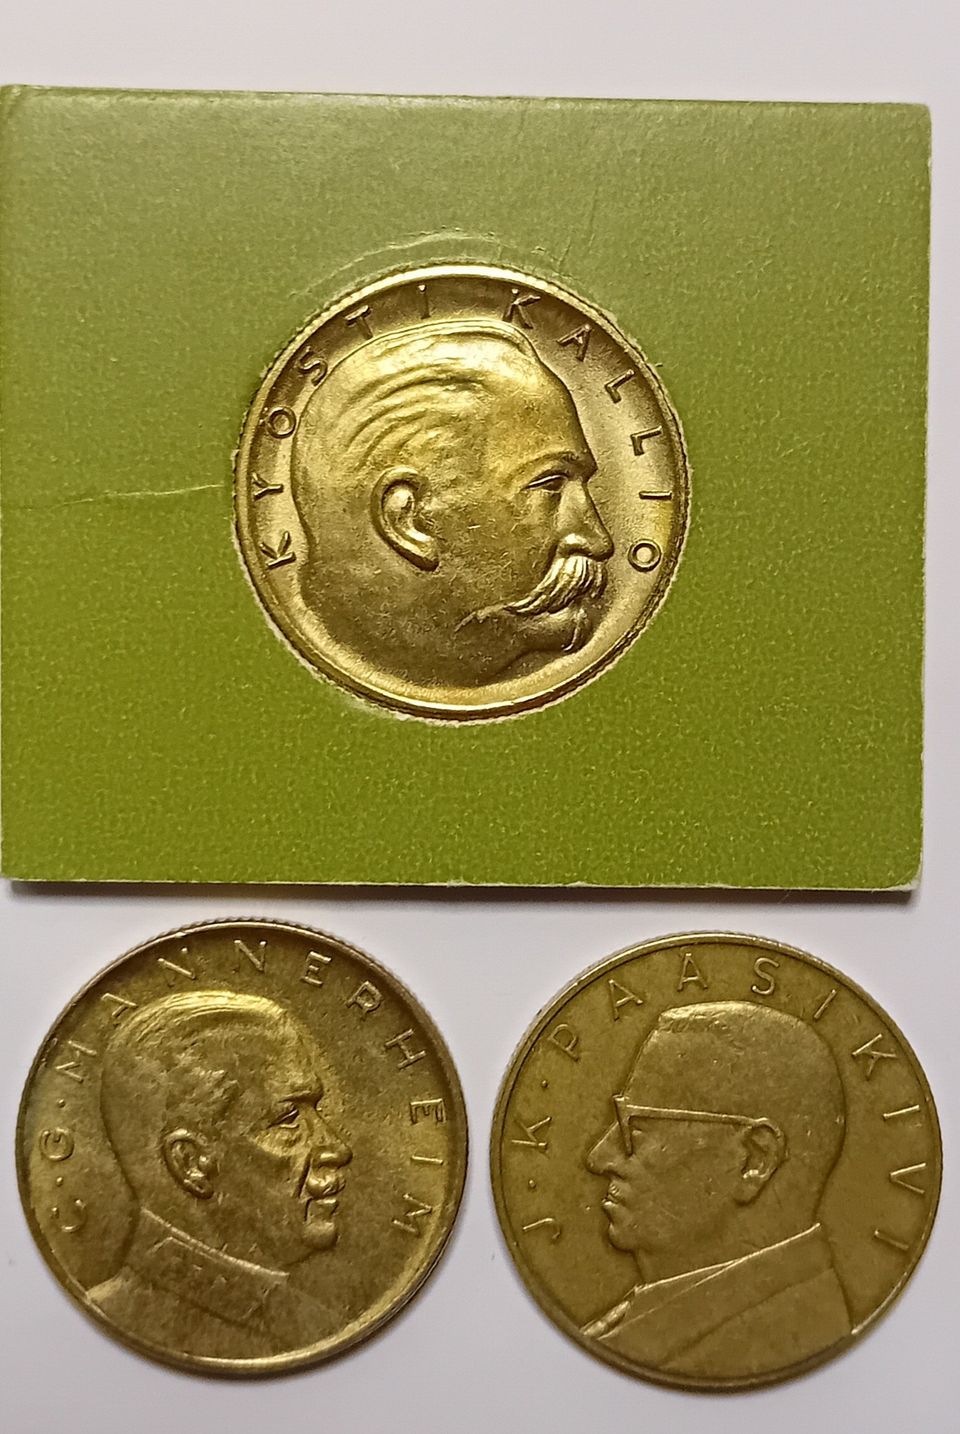 Kolme polettia, 1960-luvun Säästöpankki viikko